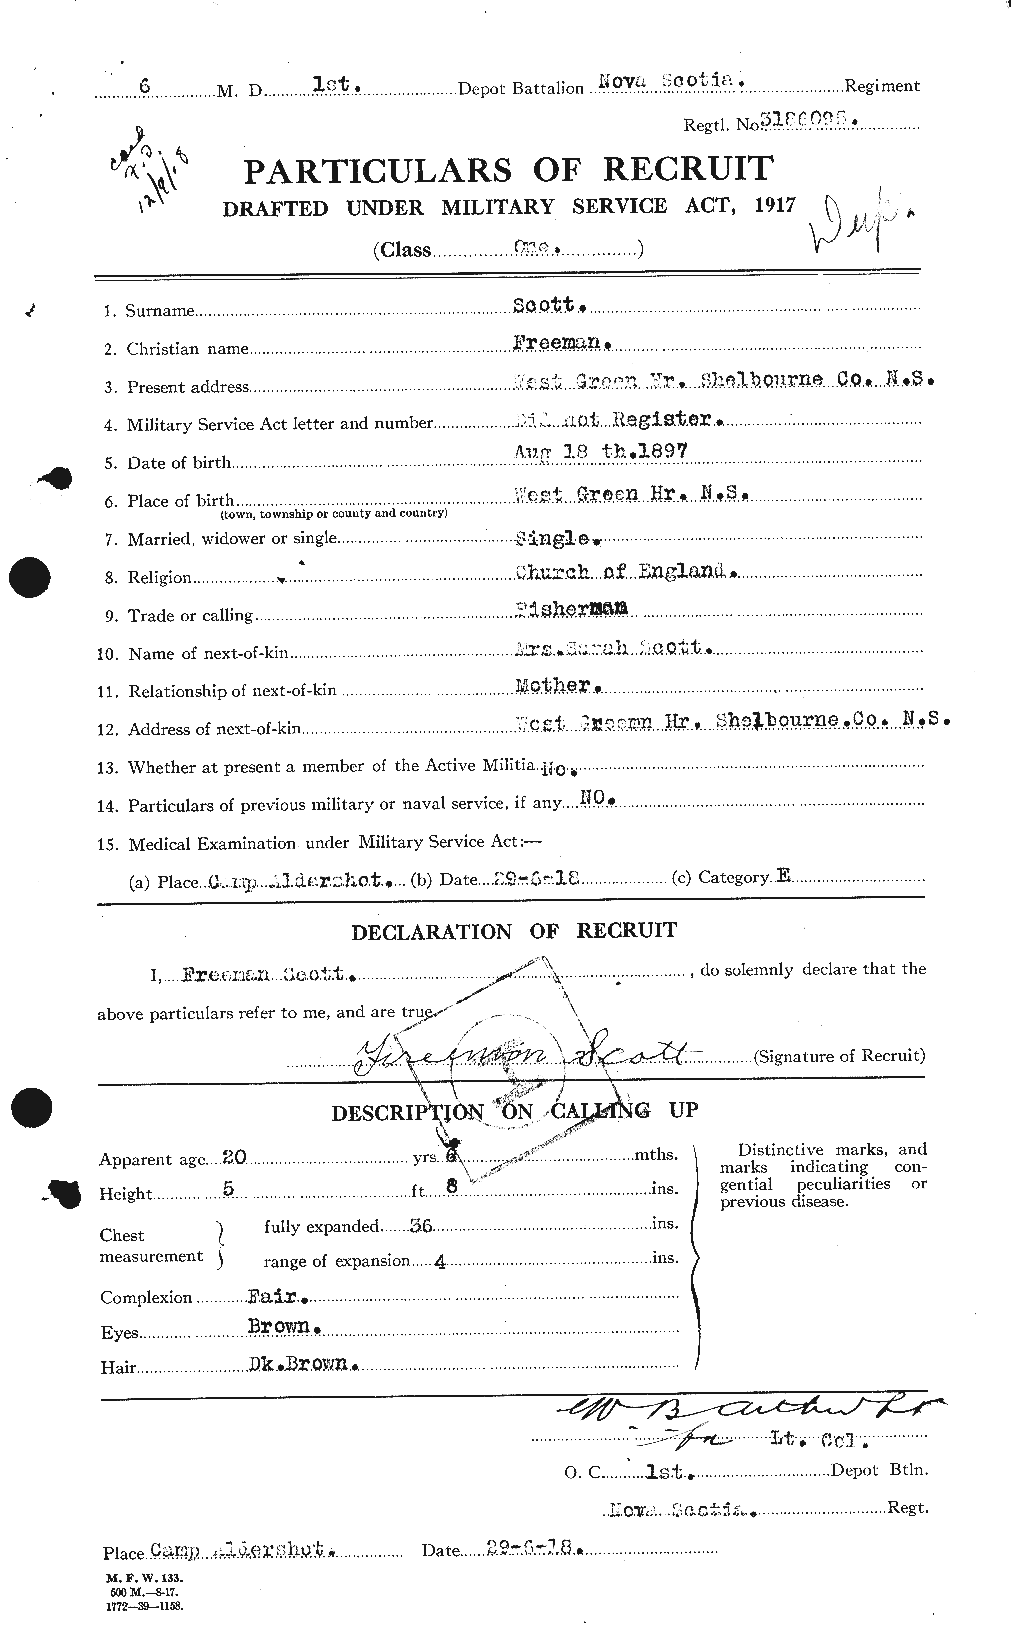 Dossiers du Personnel de la Première Guerre mondiale - CEC 084377a